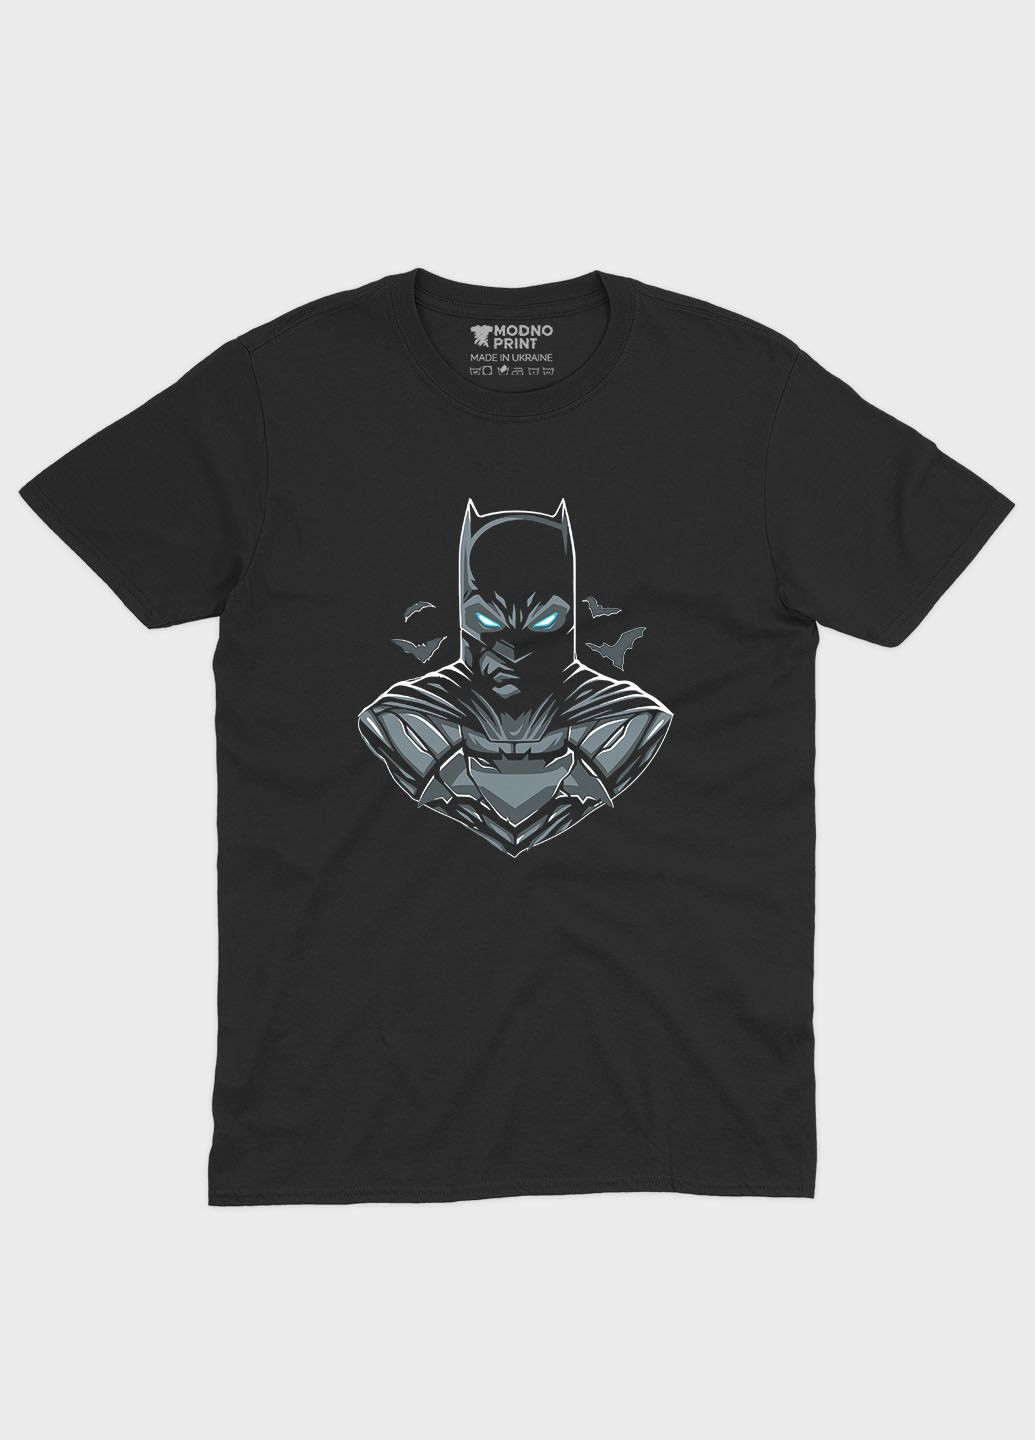 Черная мужская футболка с принтом супергероя - бэтмен (ts001-1-bl-006-003-045) Modno